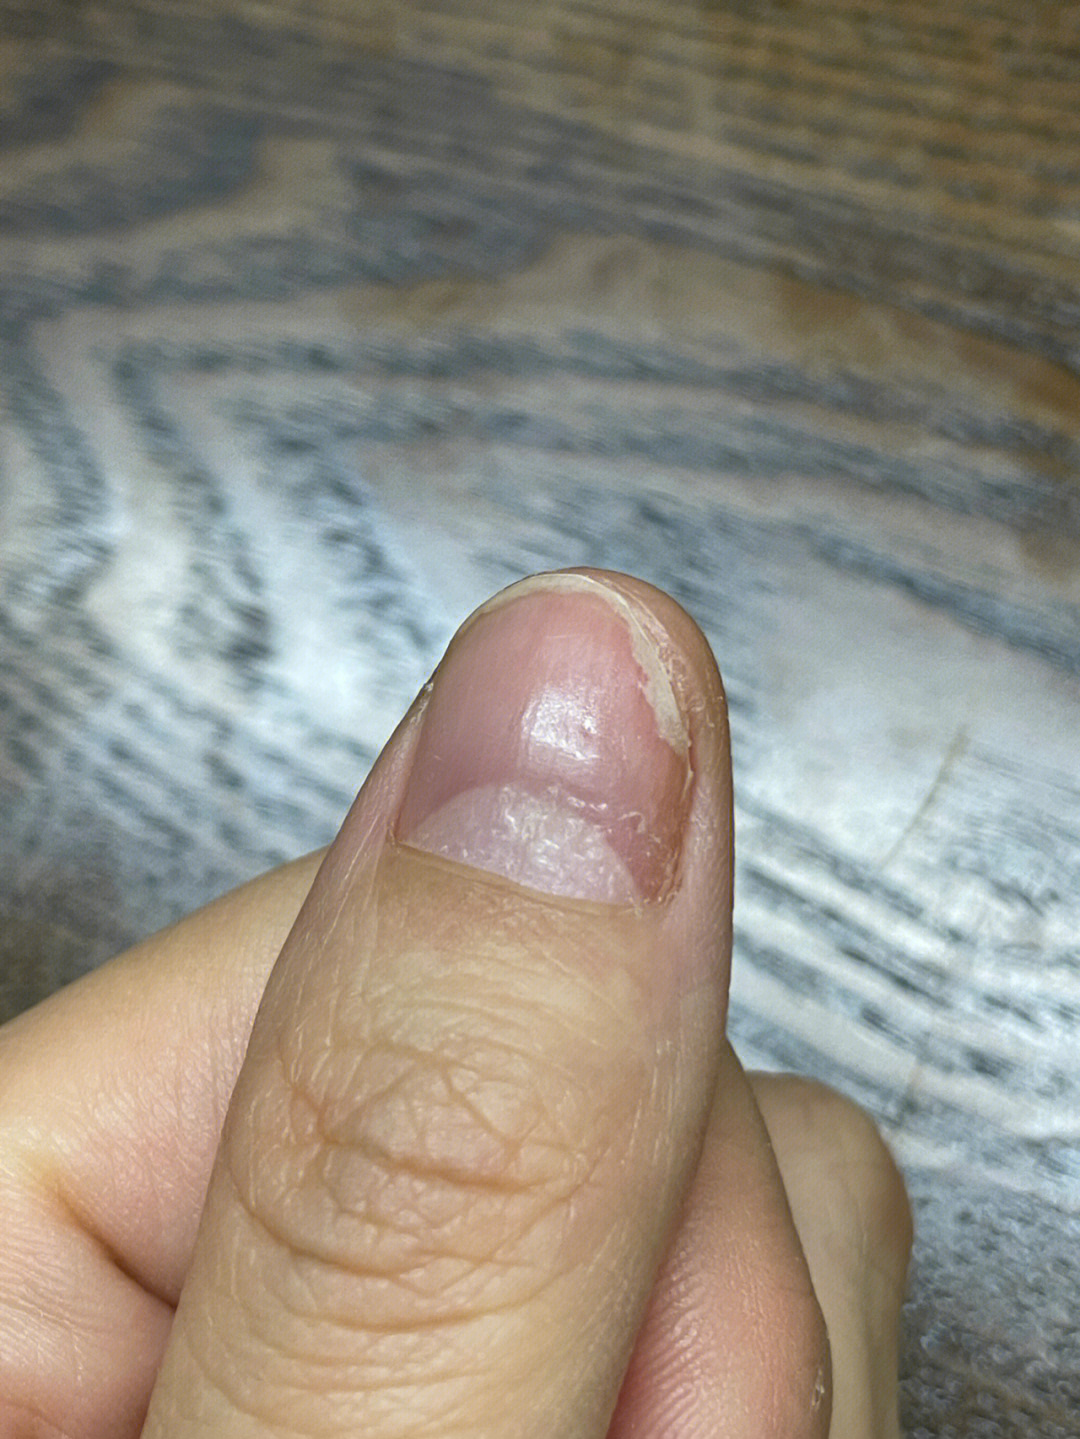 指甲底部出现了白点点,凹凸不平的以为是灰